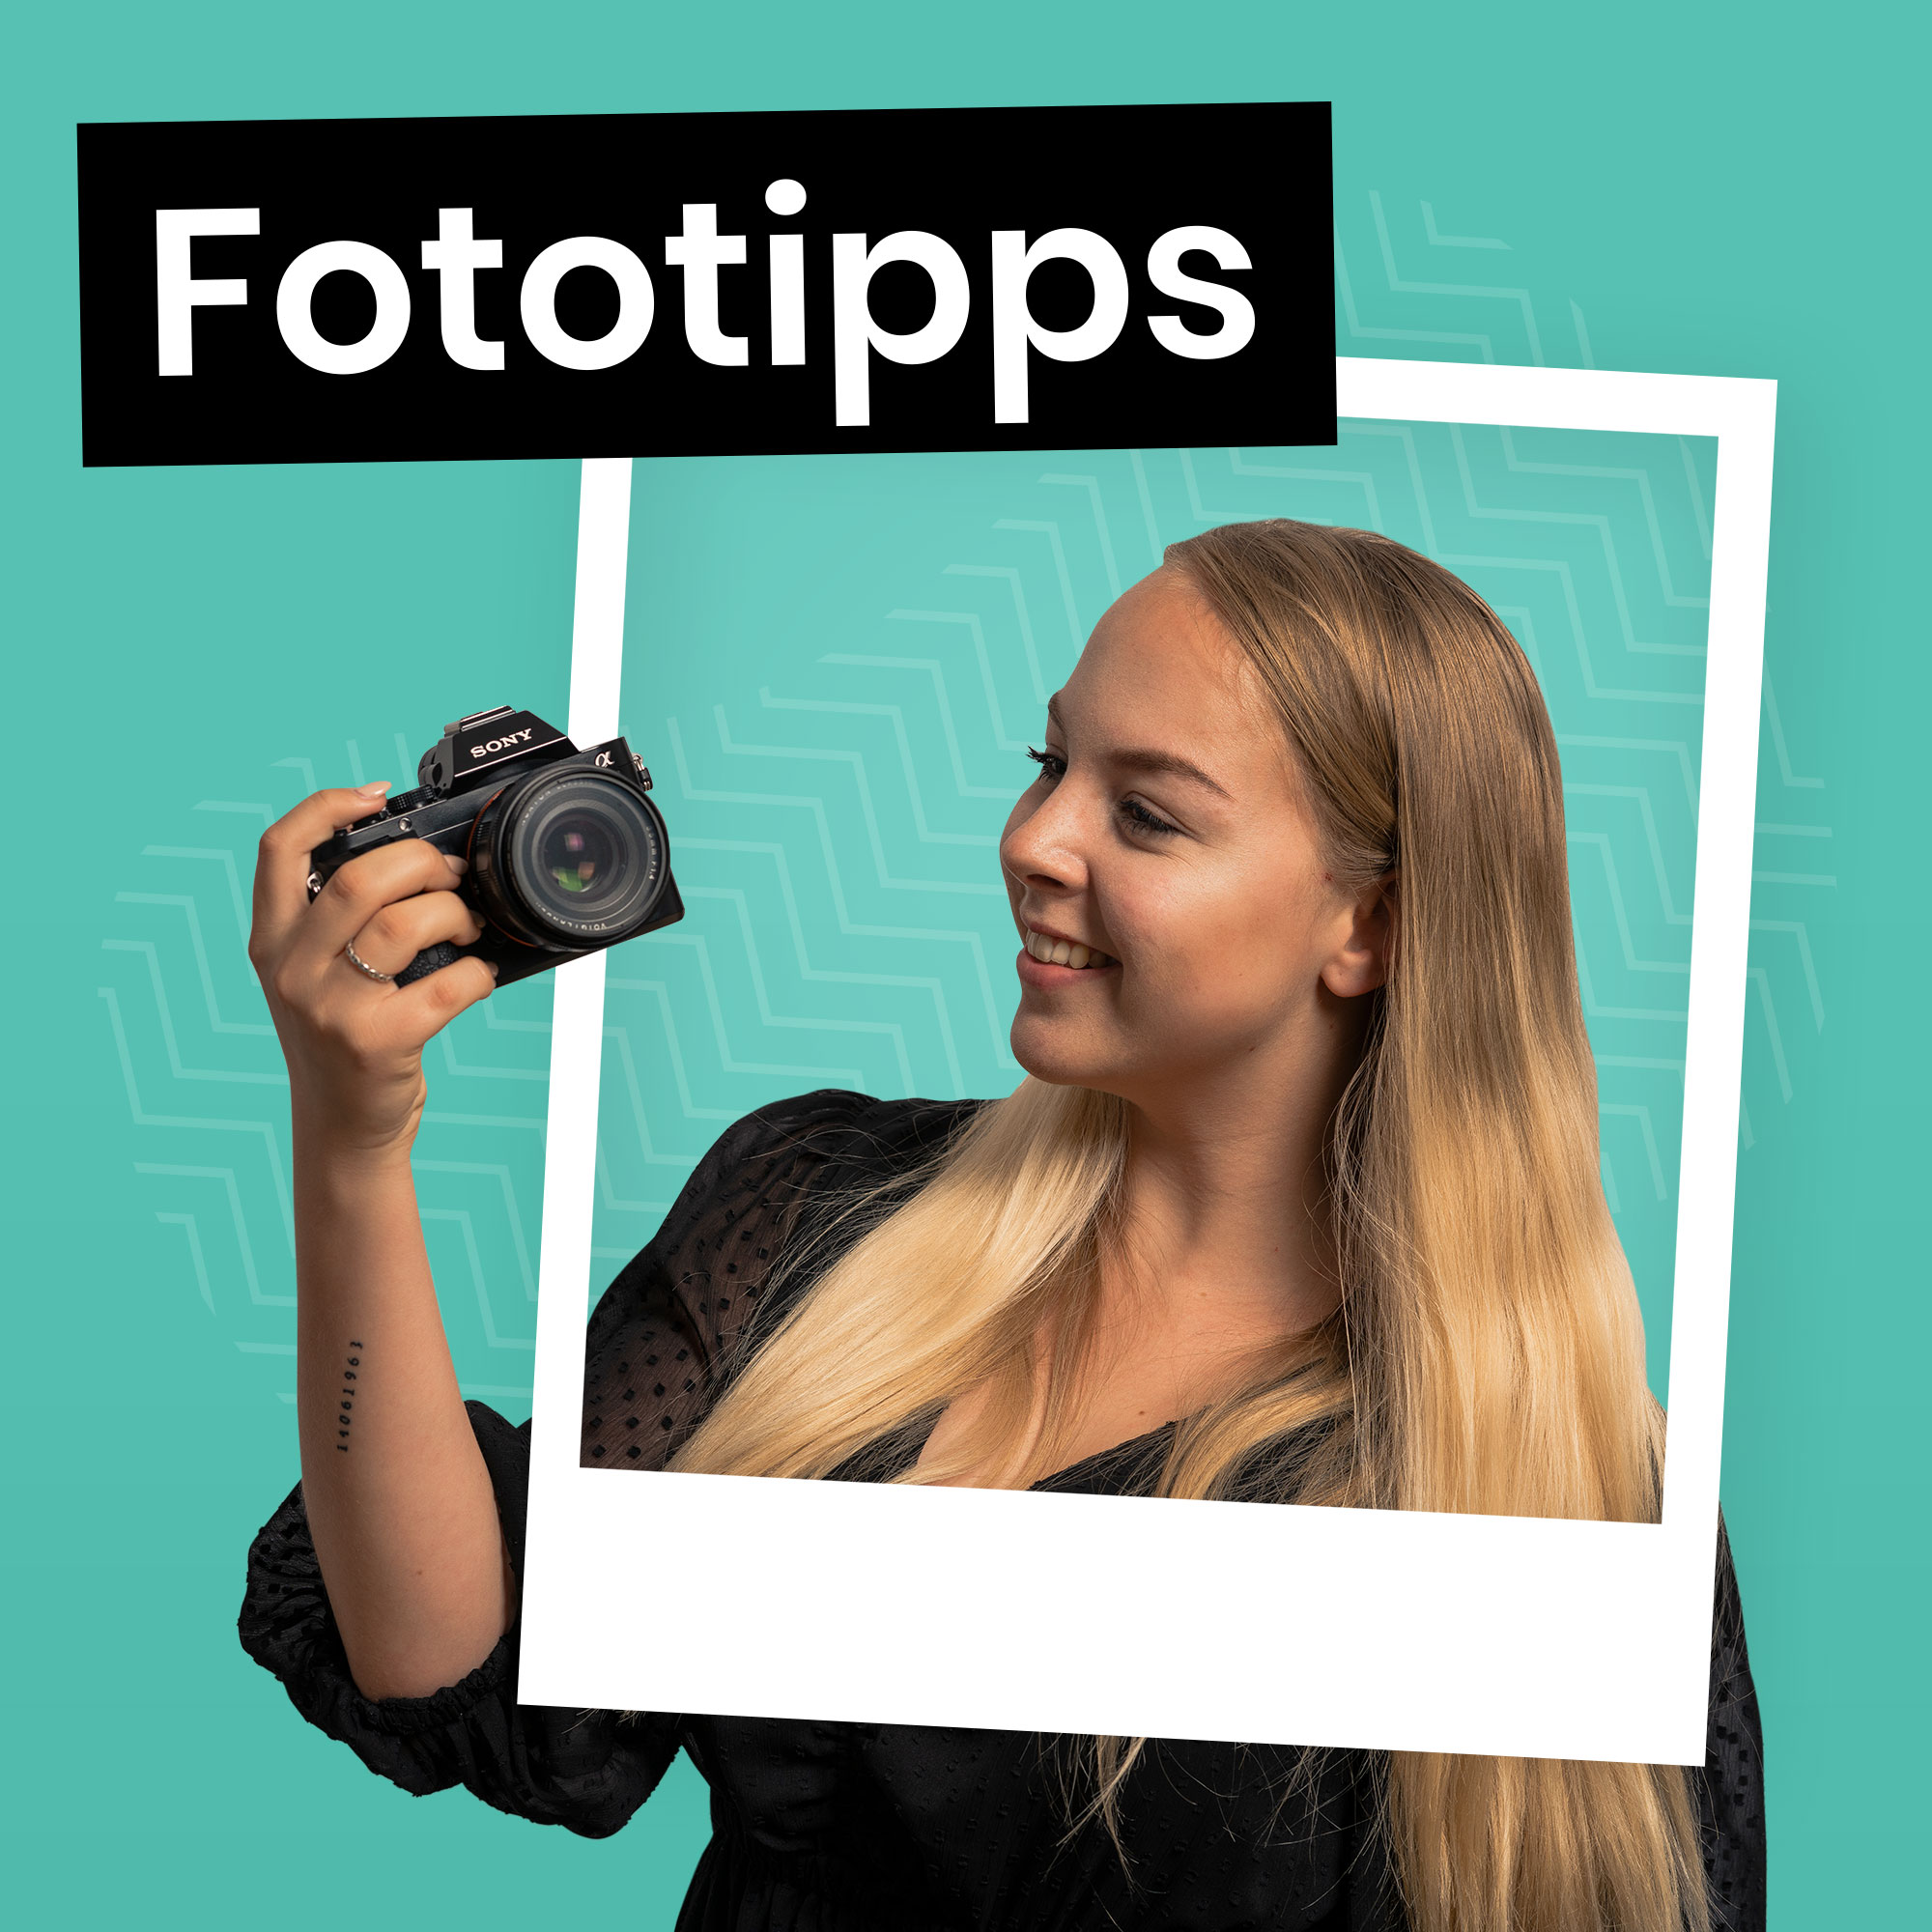 5 Fototipps - Tipps zur Fotografie